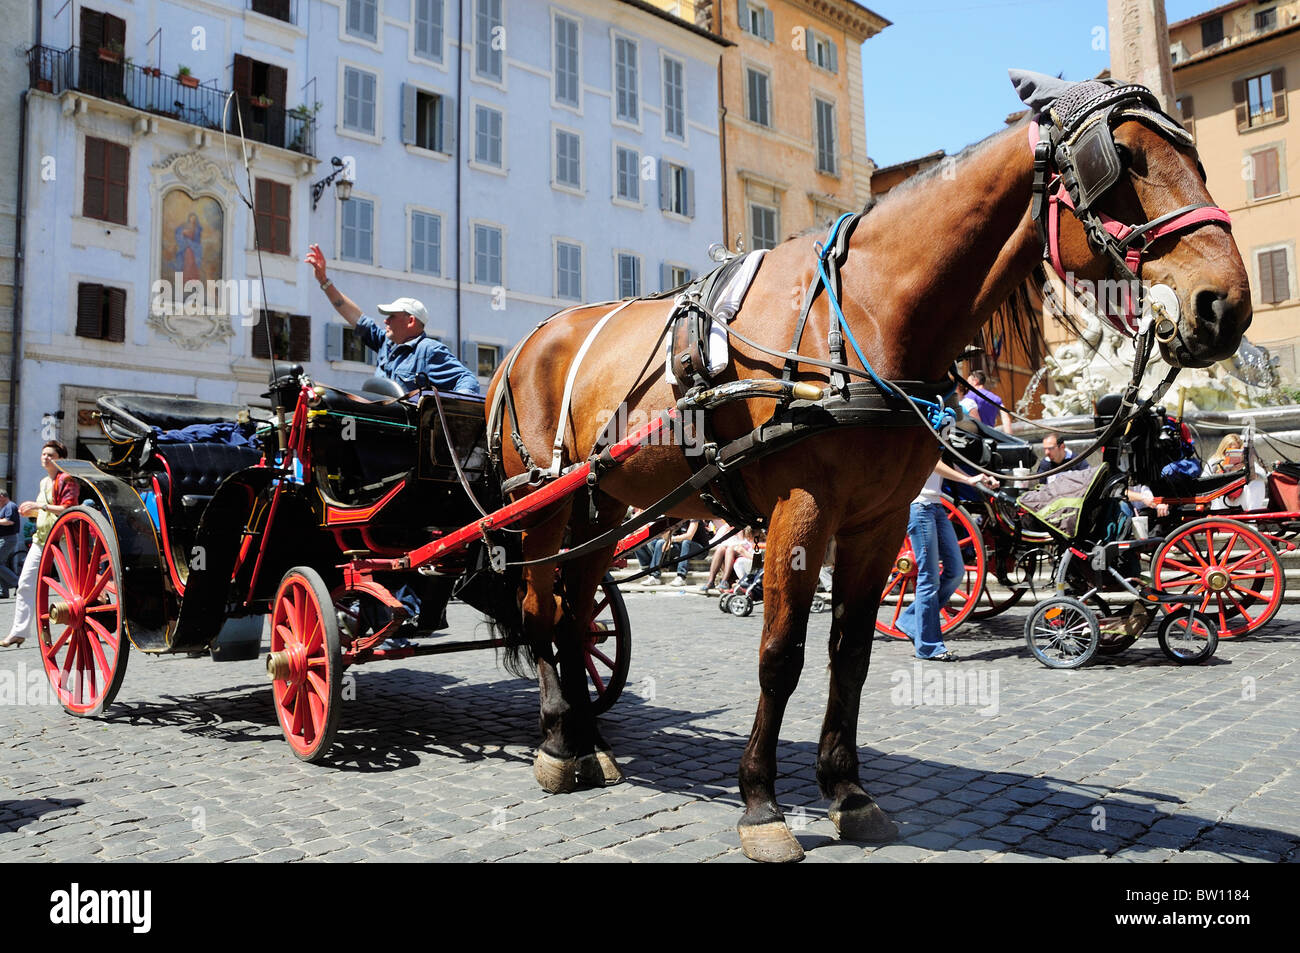 Horse drawn carriage, Piazza della Rotonda Stock Photo